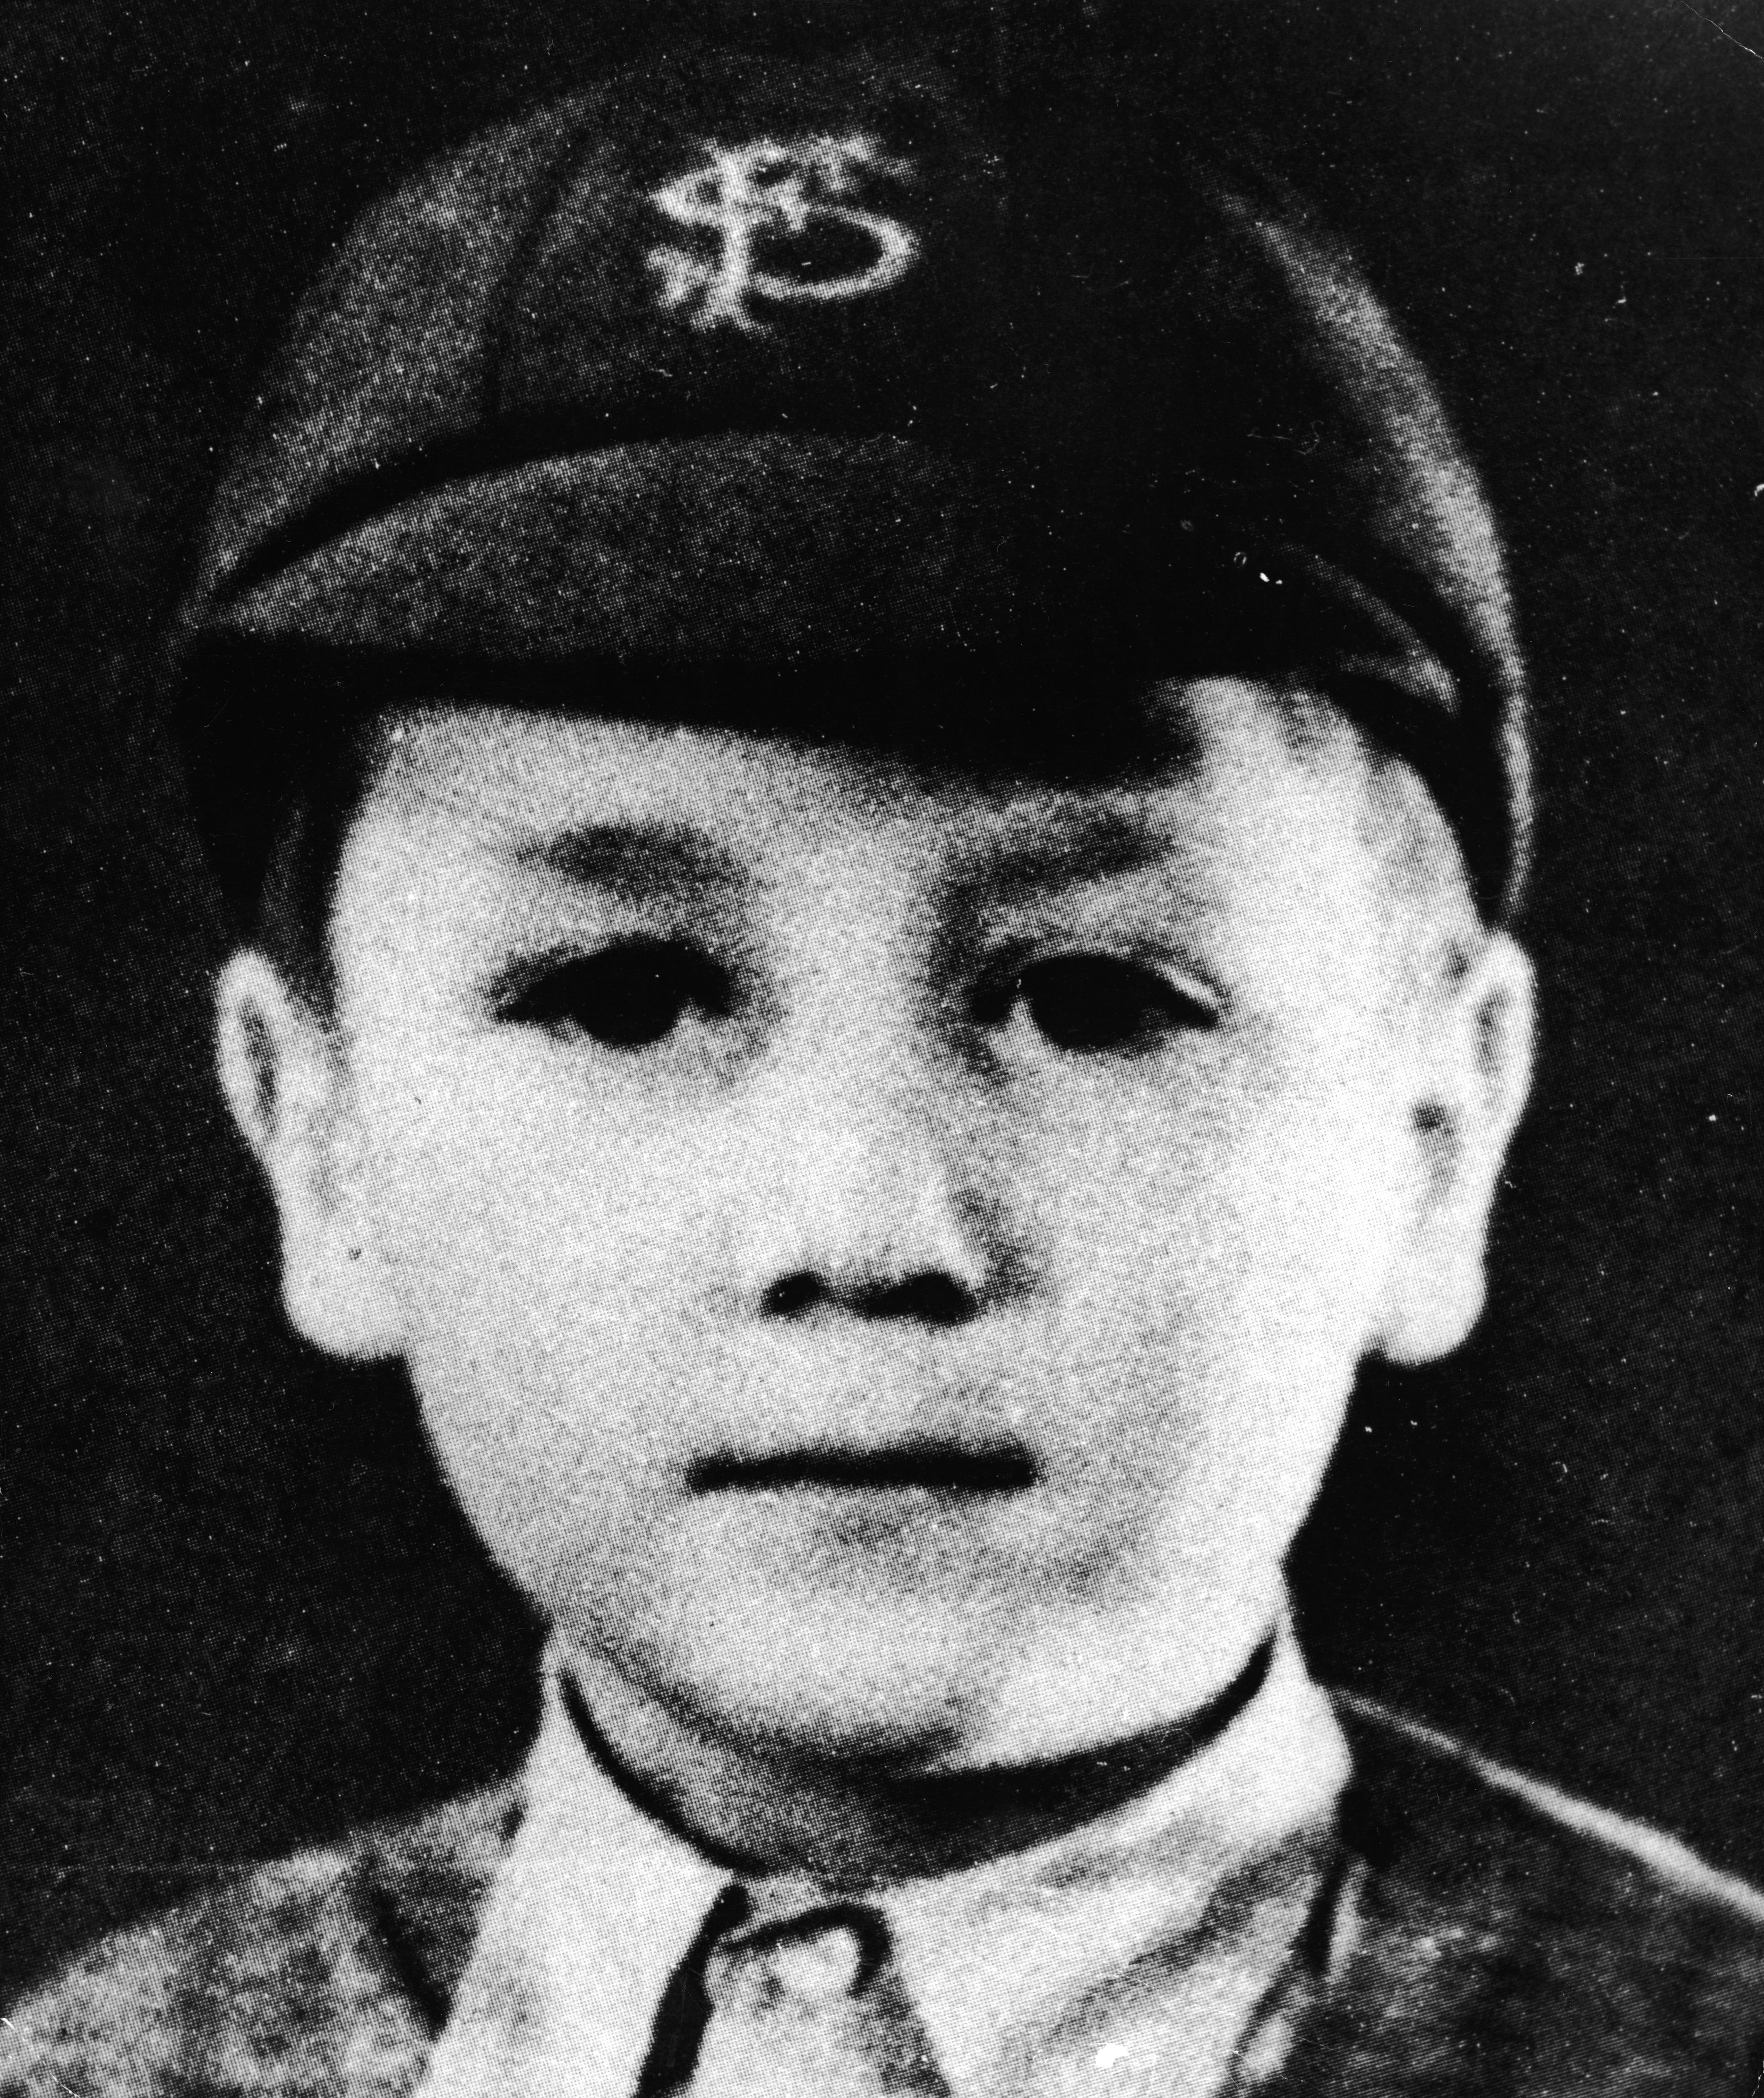 John Lennon a 8 anni con la divisa della scuola